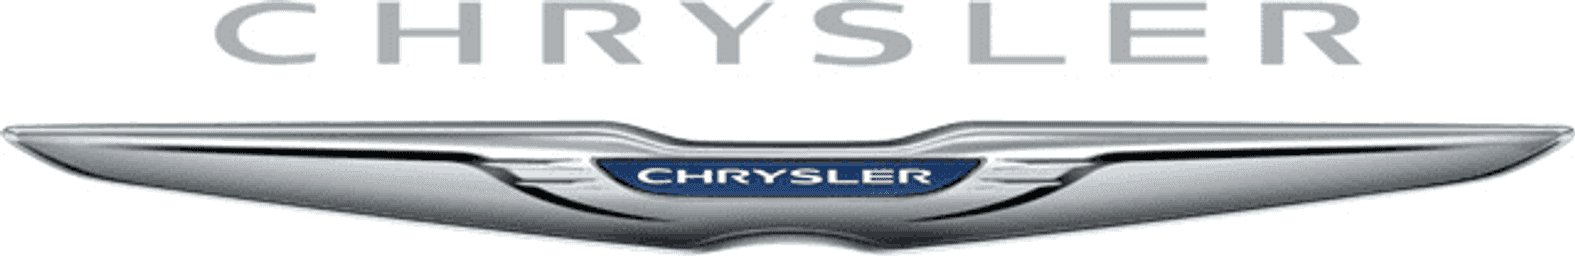 Brand CHRYSLER logo